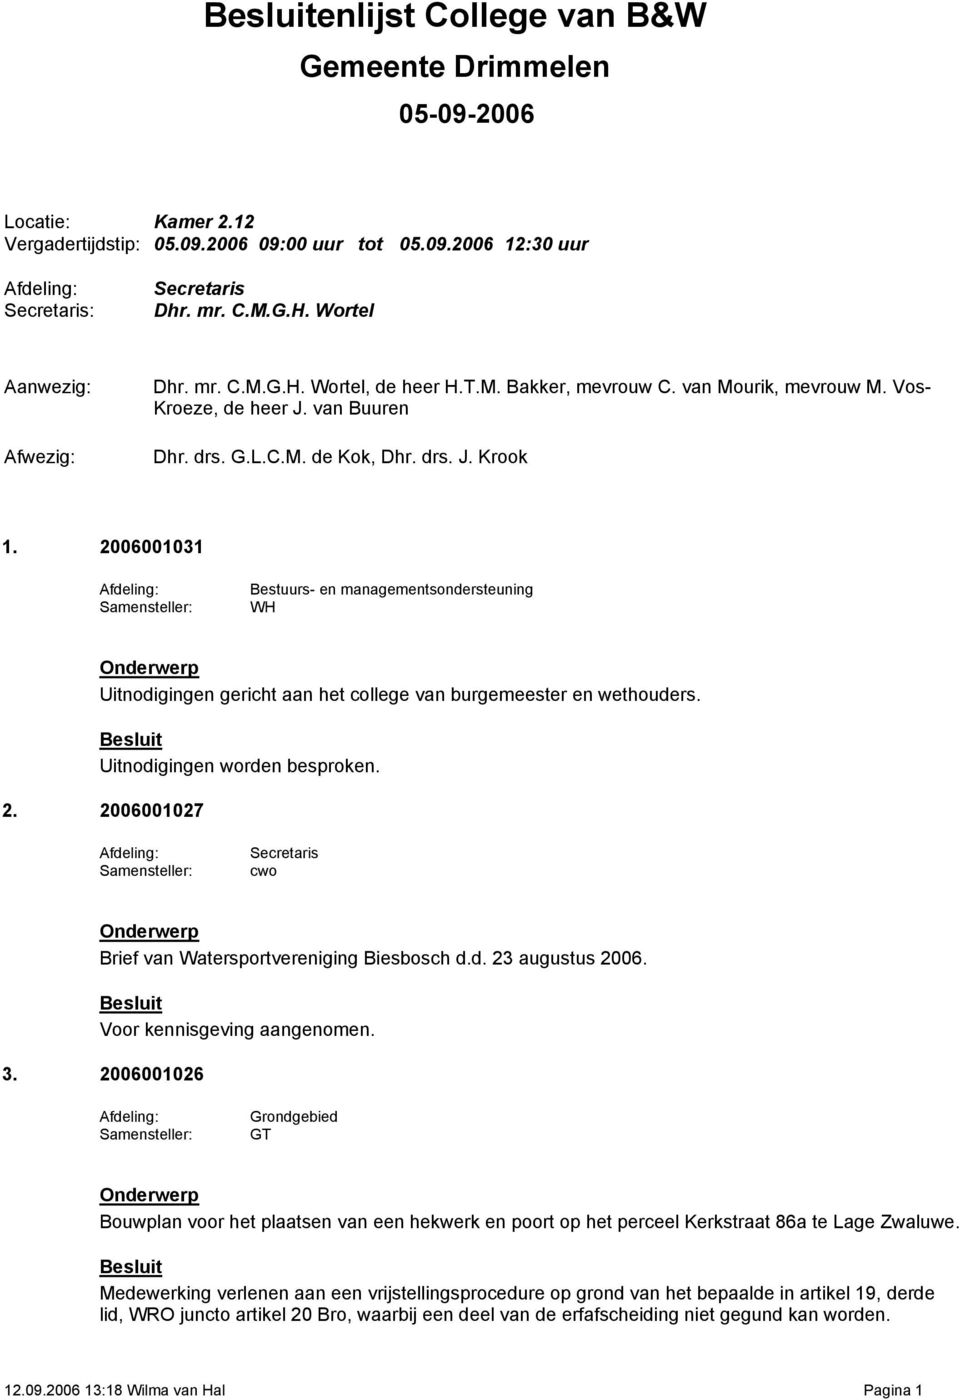 Uitnodigingen worden besproken. 2. 2006001027 Brief van Watersportvereniging Biesbosch d.d. 23 augustus 2006. Voor kennisgeving aangenomen. 3.